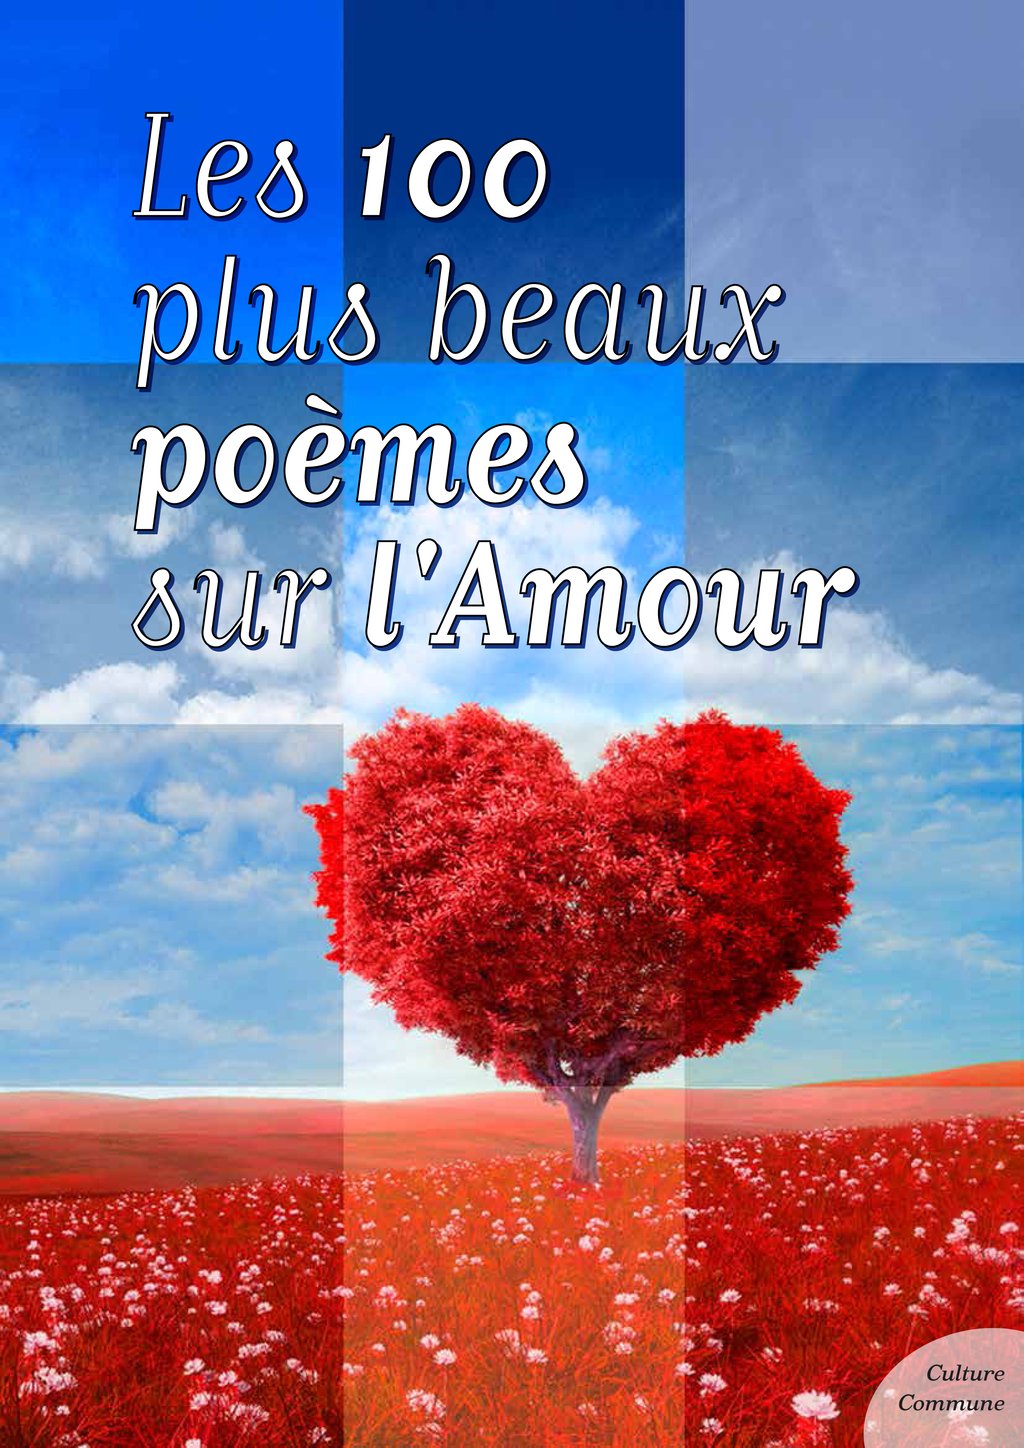 Les Plus Beaux Poèmes D Amour Anthologie Les cent plus beaux poèmes sur l'Amour - 3612220388669 - Ebook Poésie -  Ebook poésie & théâtre - Ebook littérature | Cultura